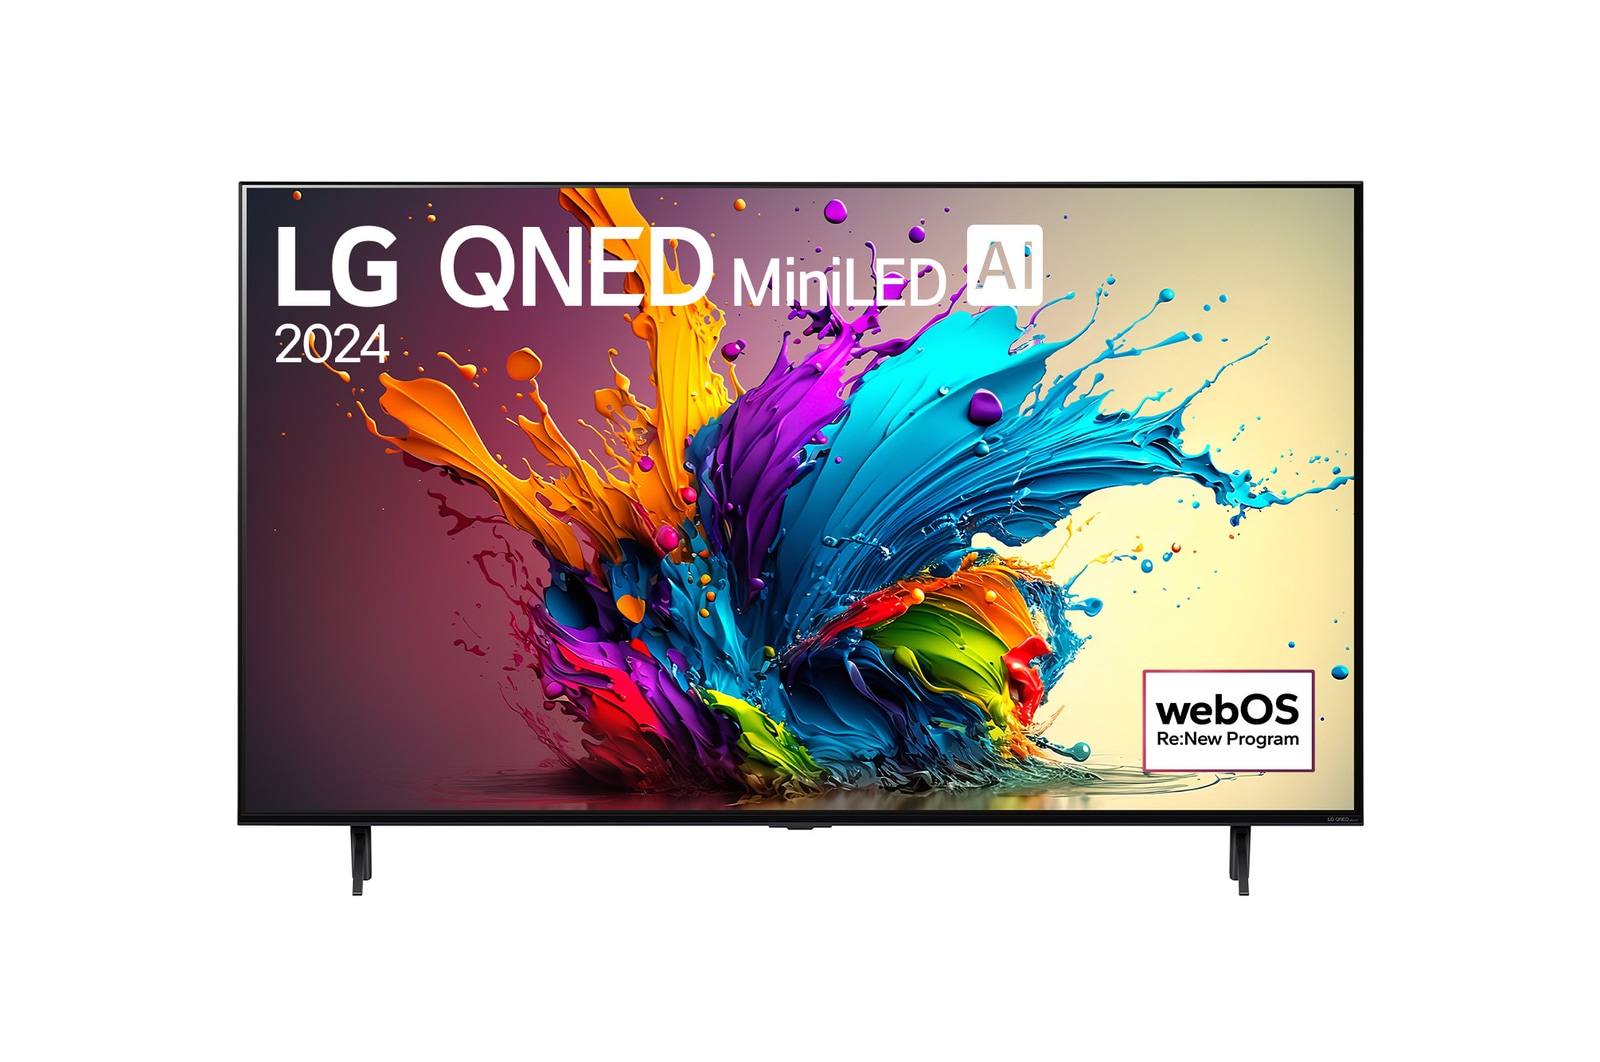 Vue de face du téléviseur QNED MiniDEL de LG, modèle QNED90, avec la mention LG QNED, 2024 et le logo webOS Re:New Program affichés à l’écran